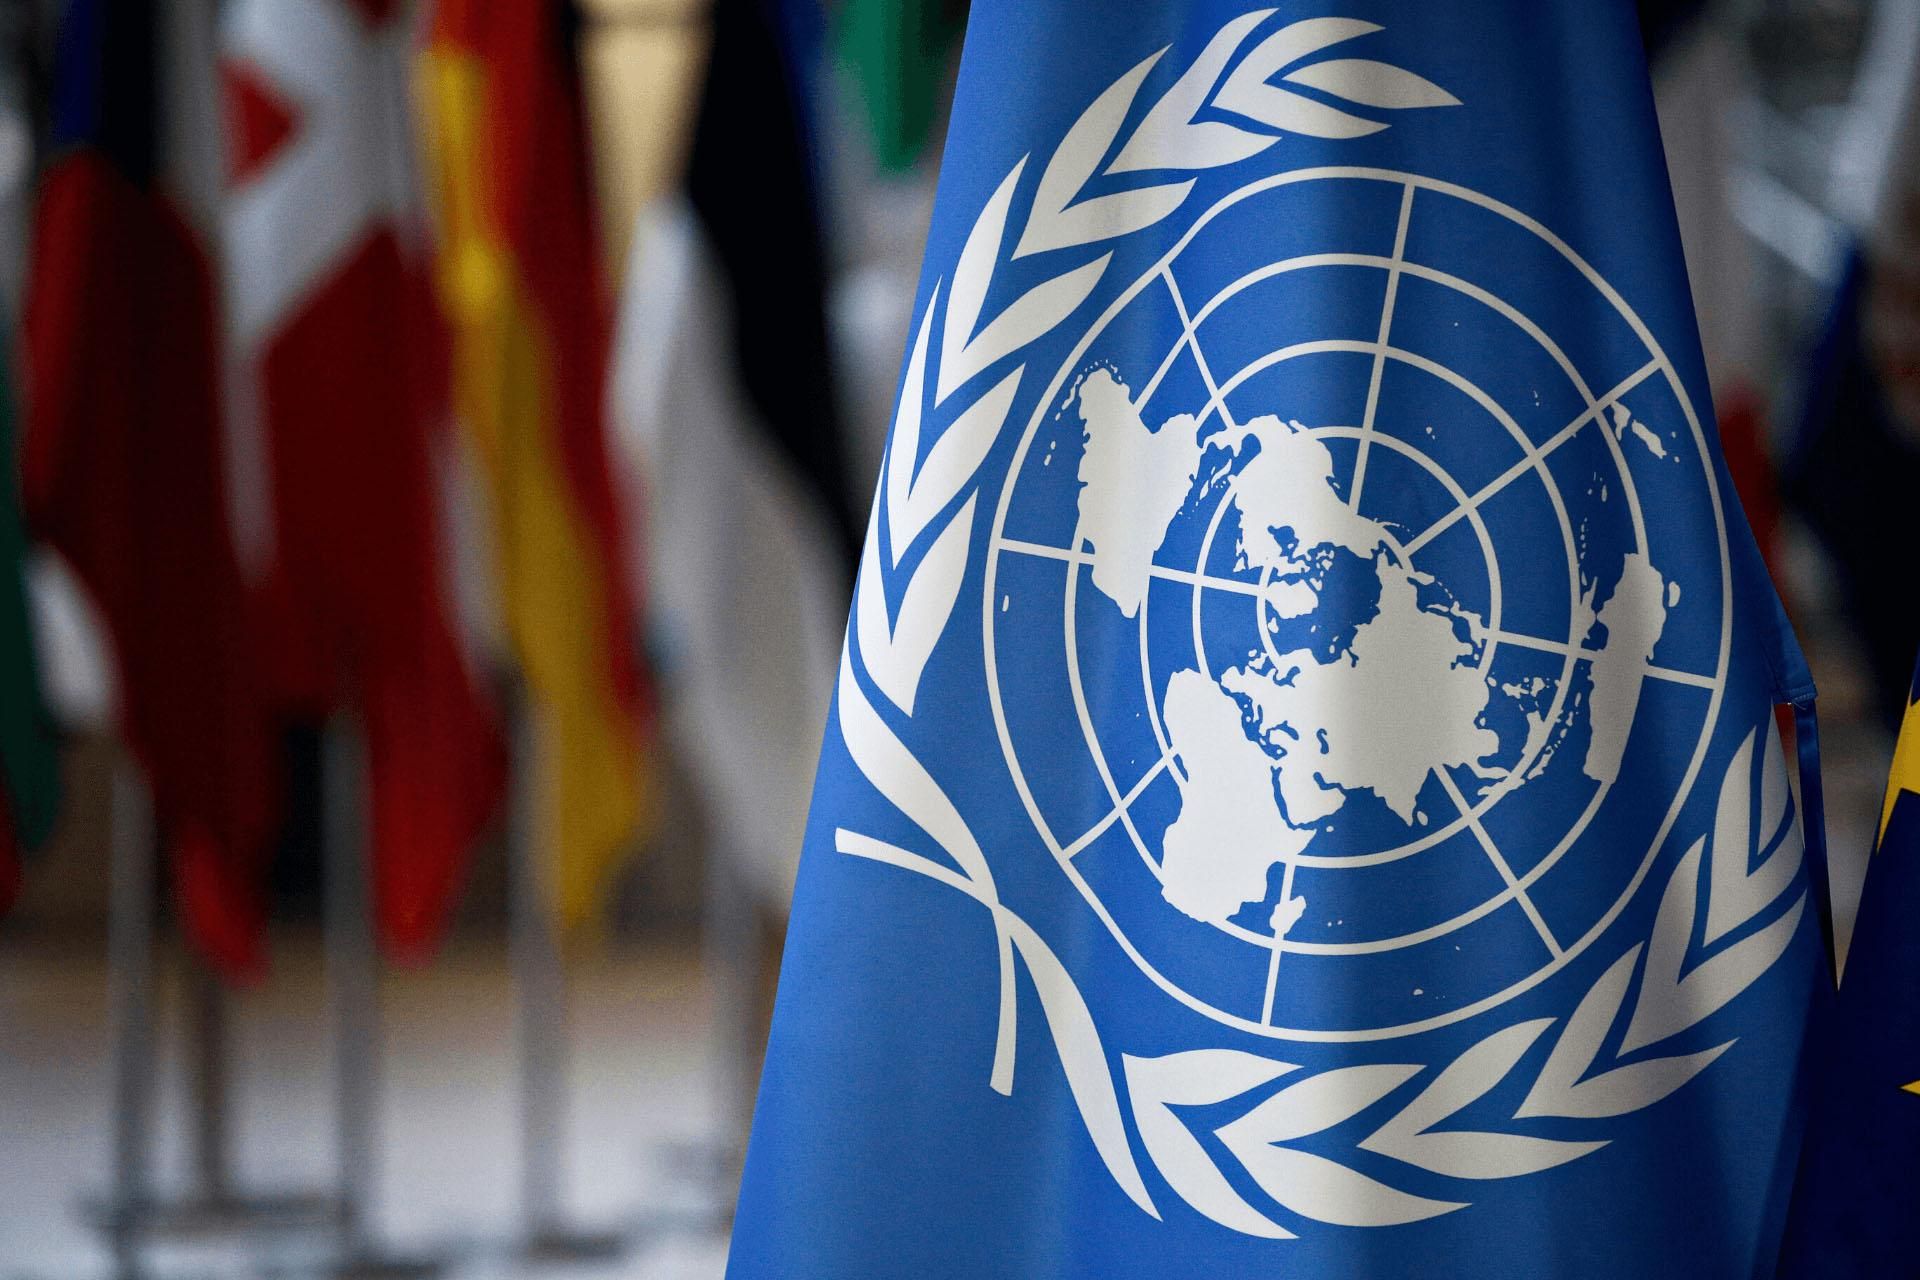 24 співробітники ООН заразилися коронавірусом, – ЗМІ